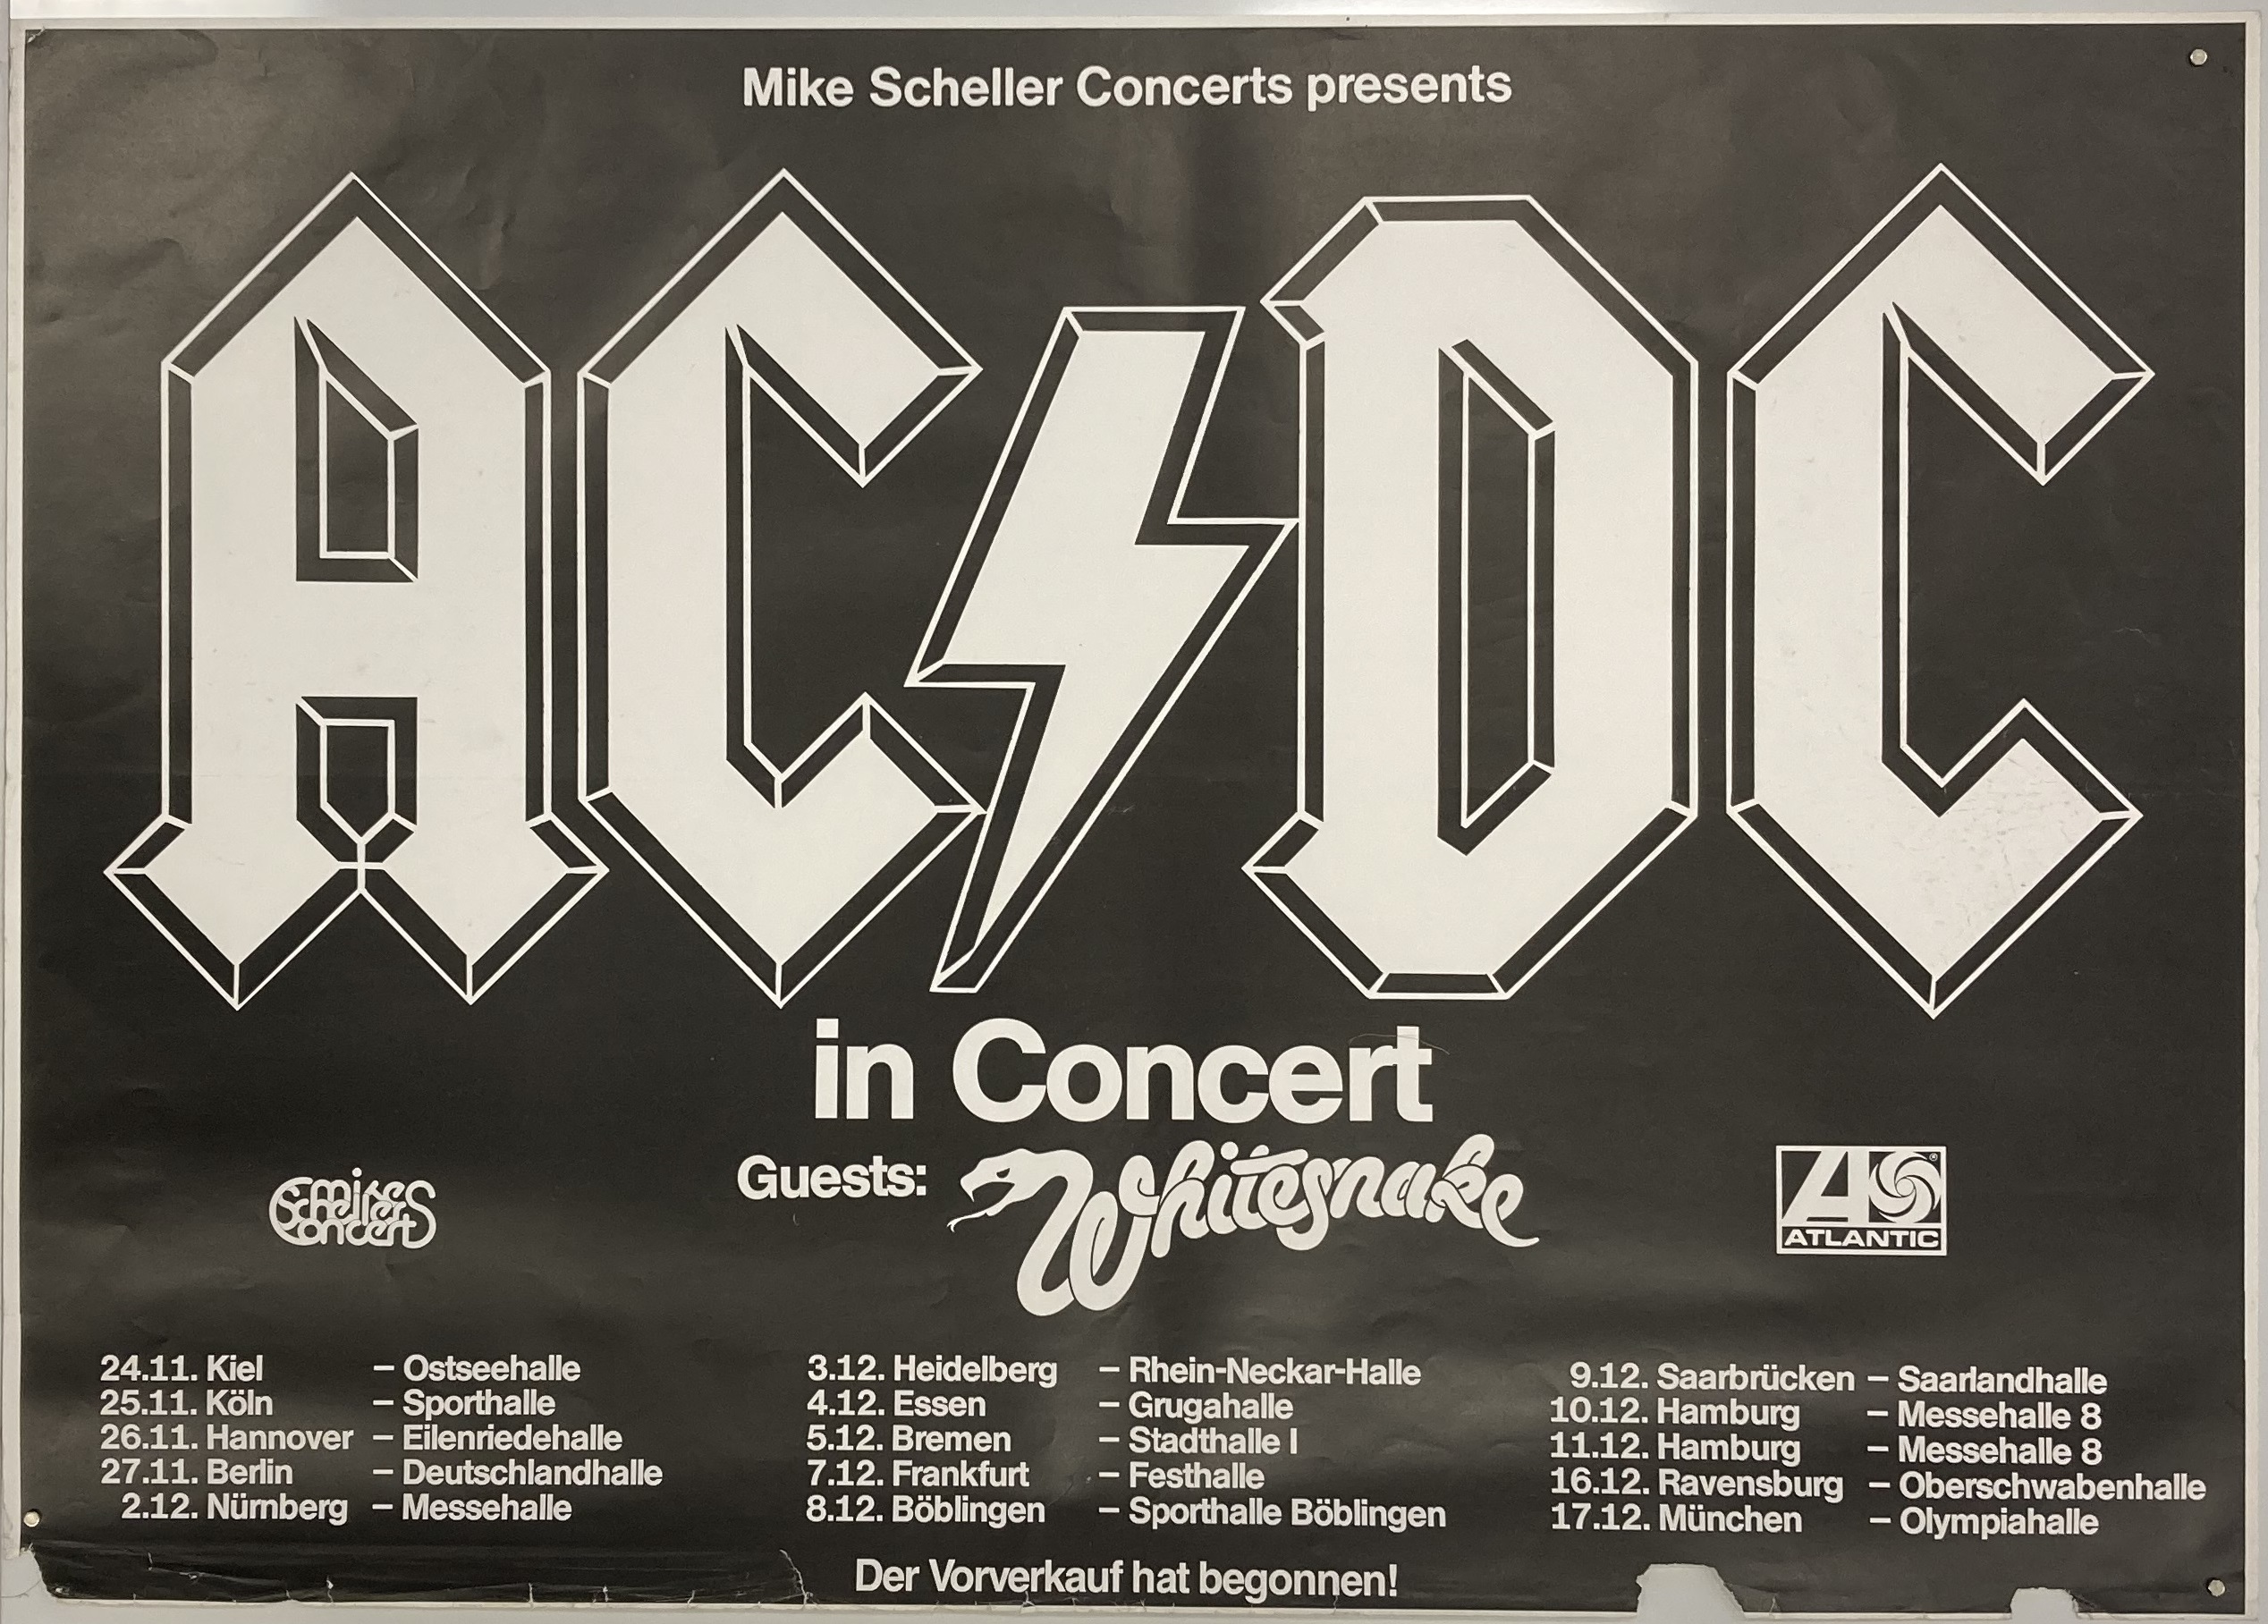 ac dc tour dates 1980